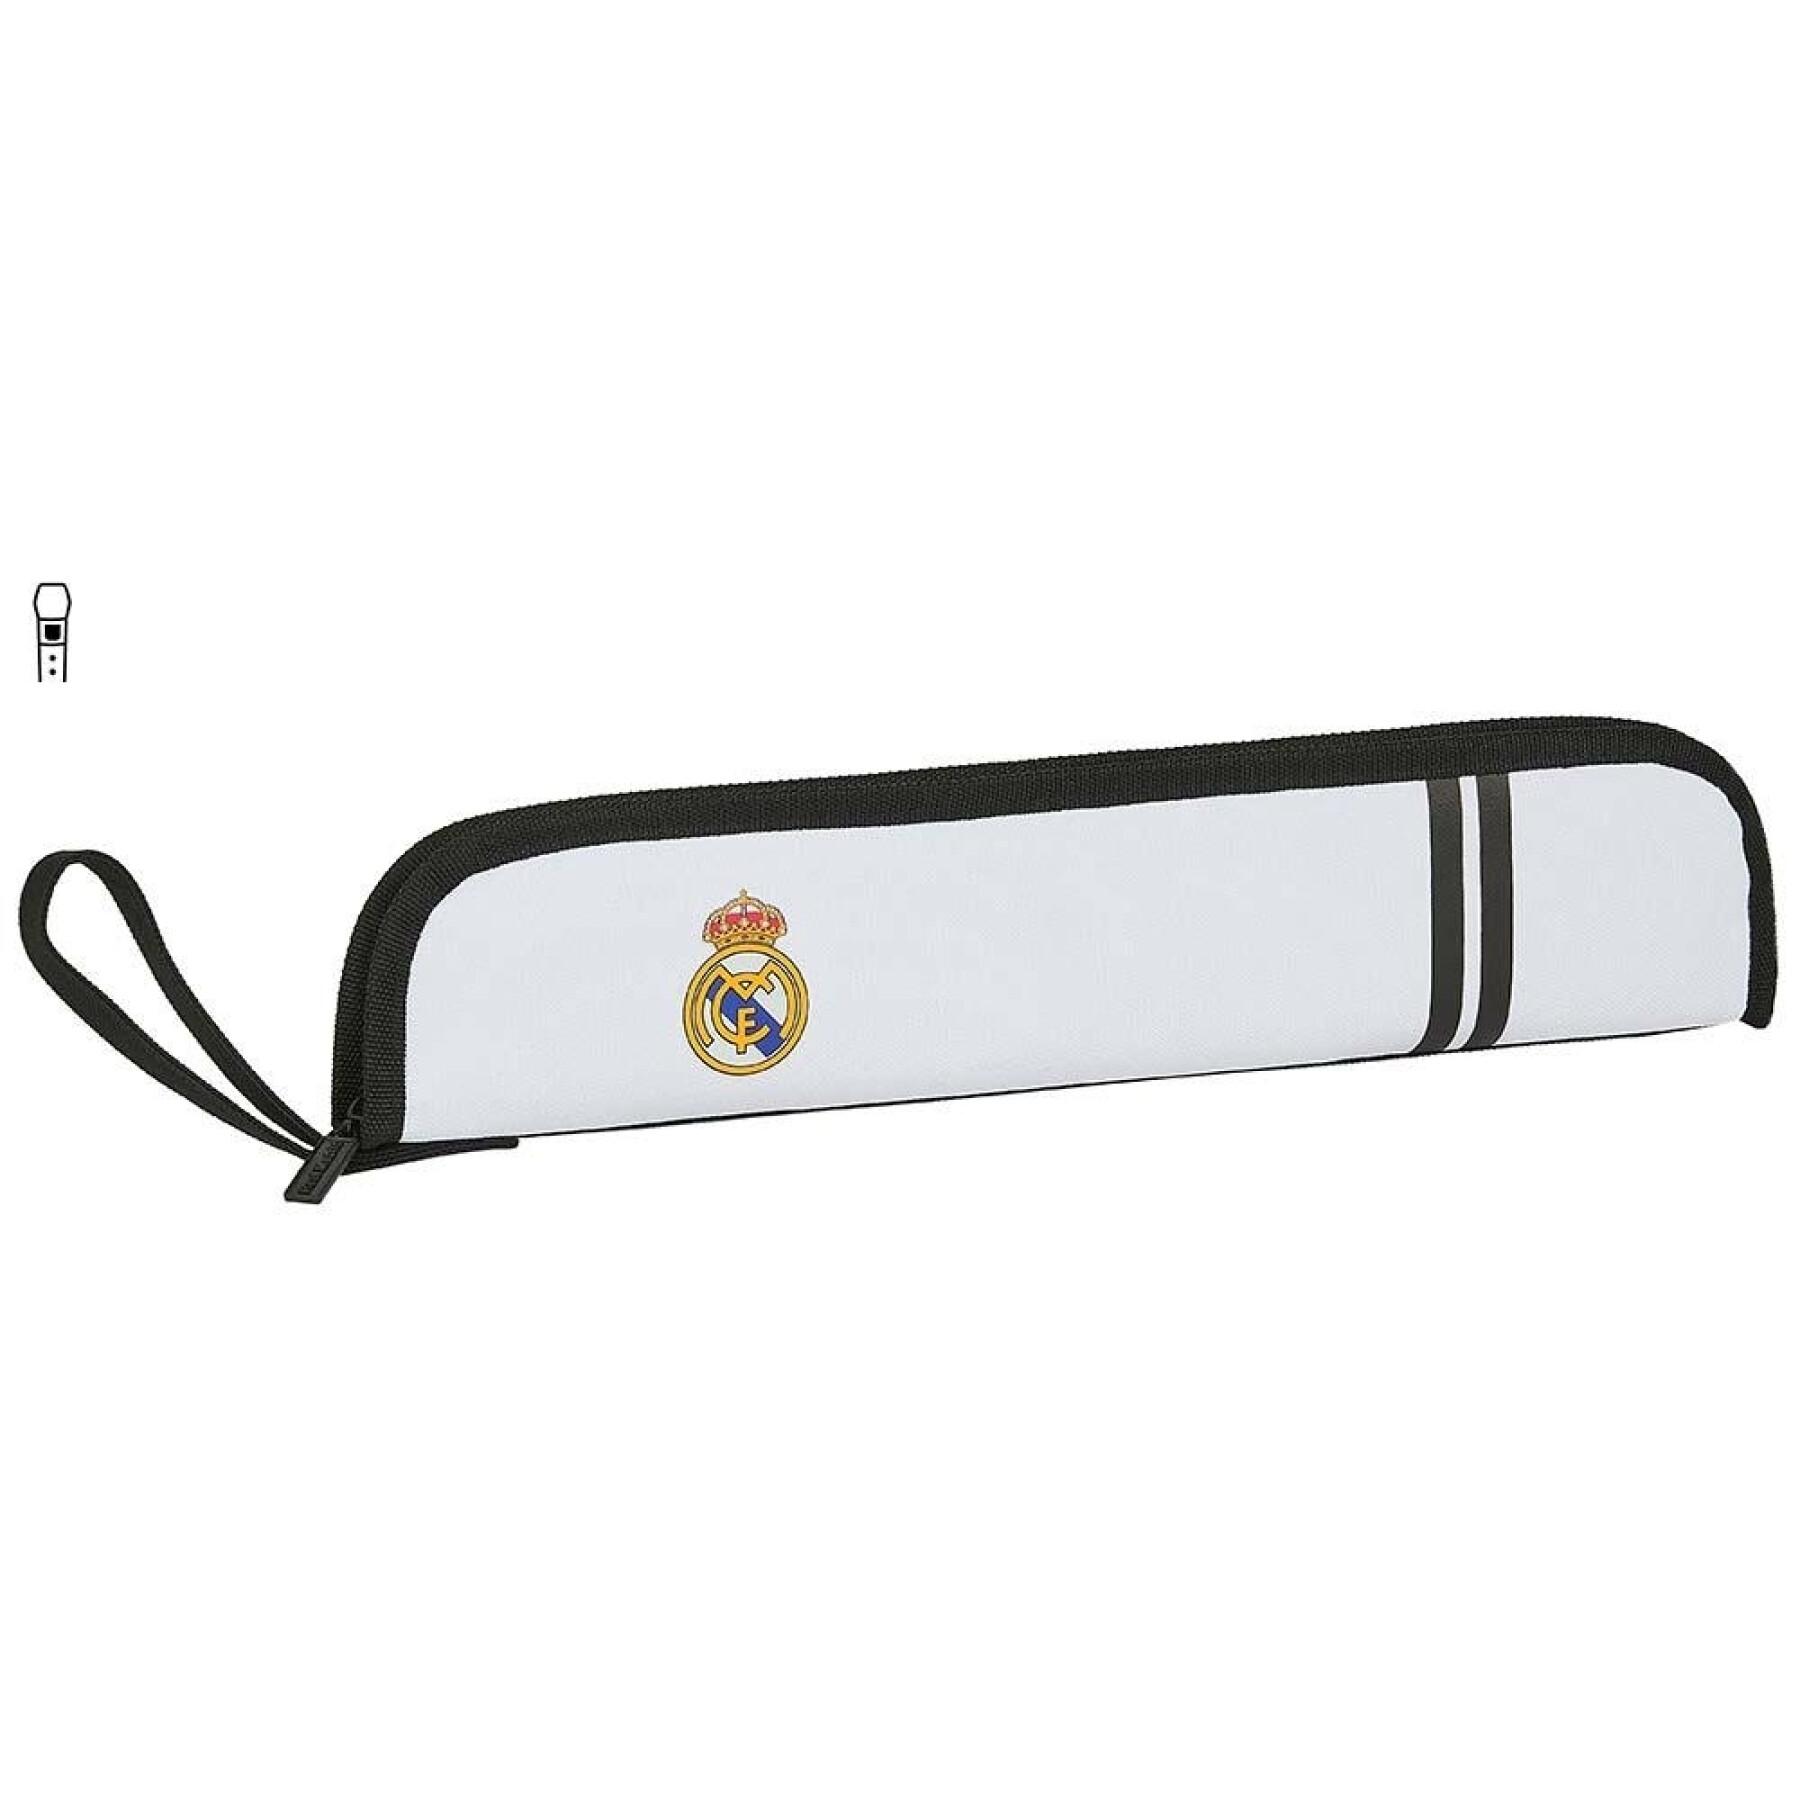 Children's flute holder Real Madrid